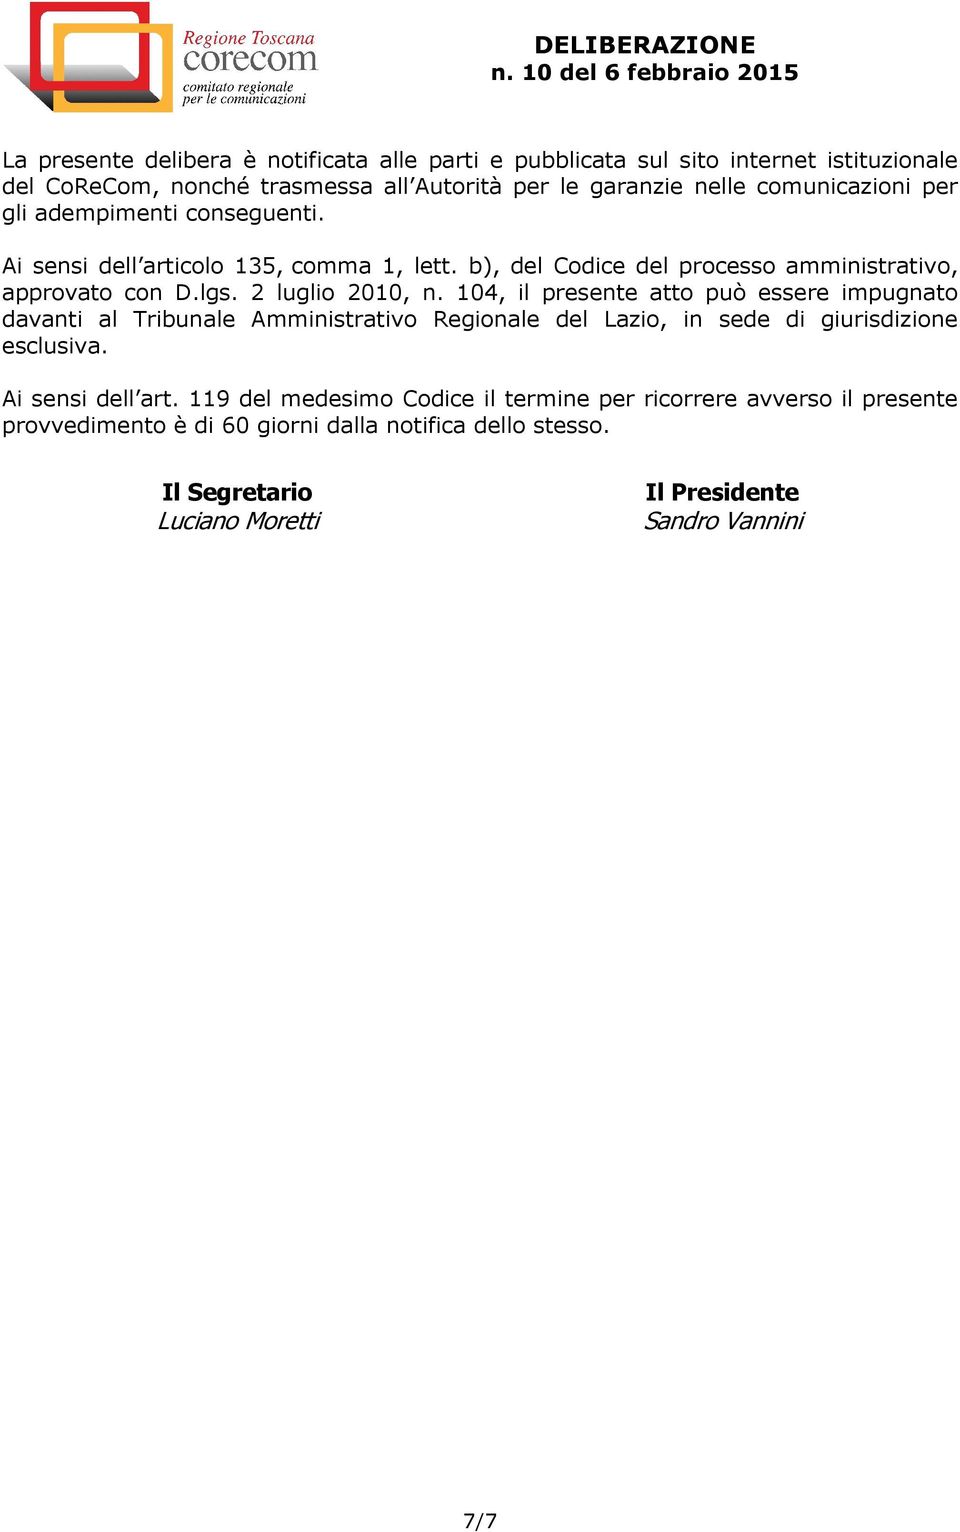 2 luglio 2010, n. 104, il presente atto può essere impugnato davanti al Tribunale Amministrativo Regionale del Lazio, in sede di giurisdizione esclusiva.